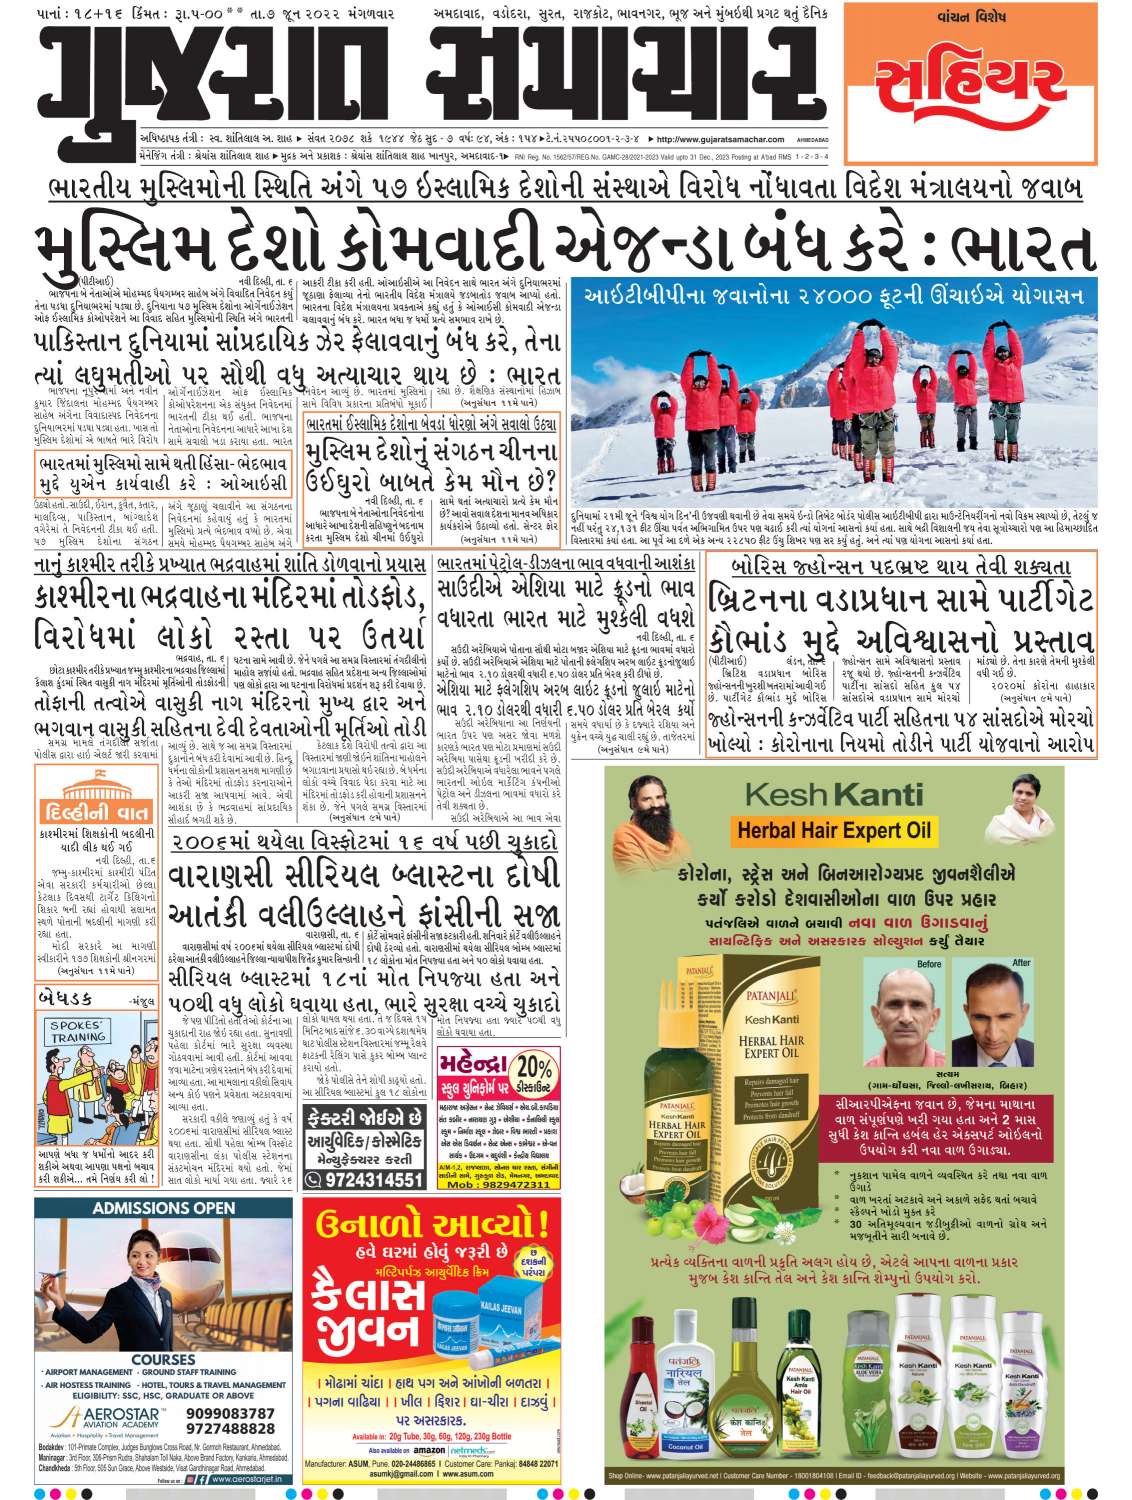 Book Gujarat Samachar Newspaper Ads Online at Best Rates